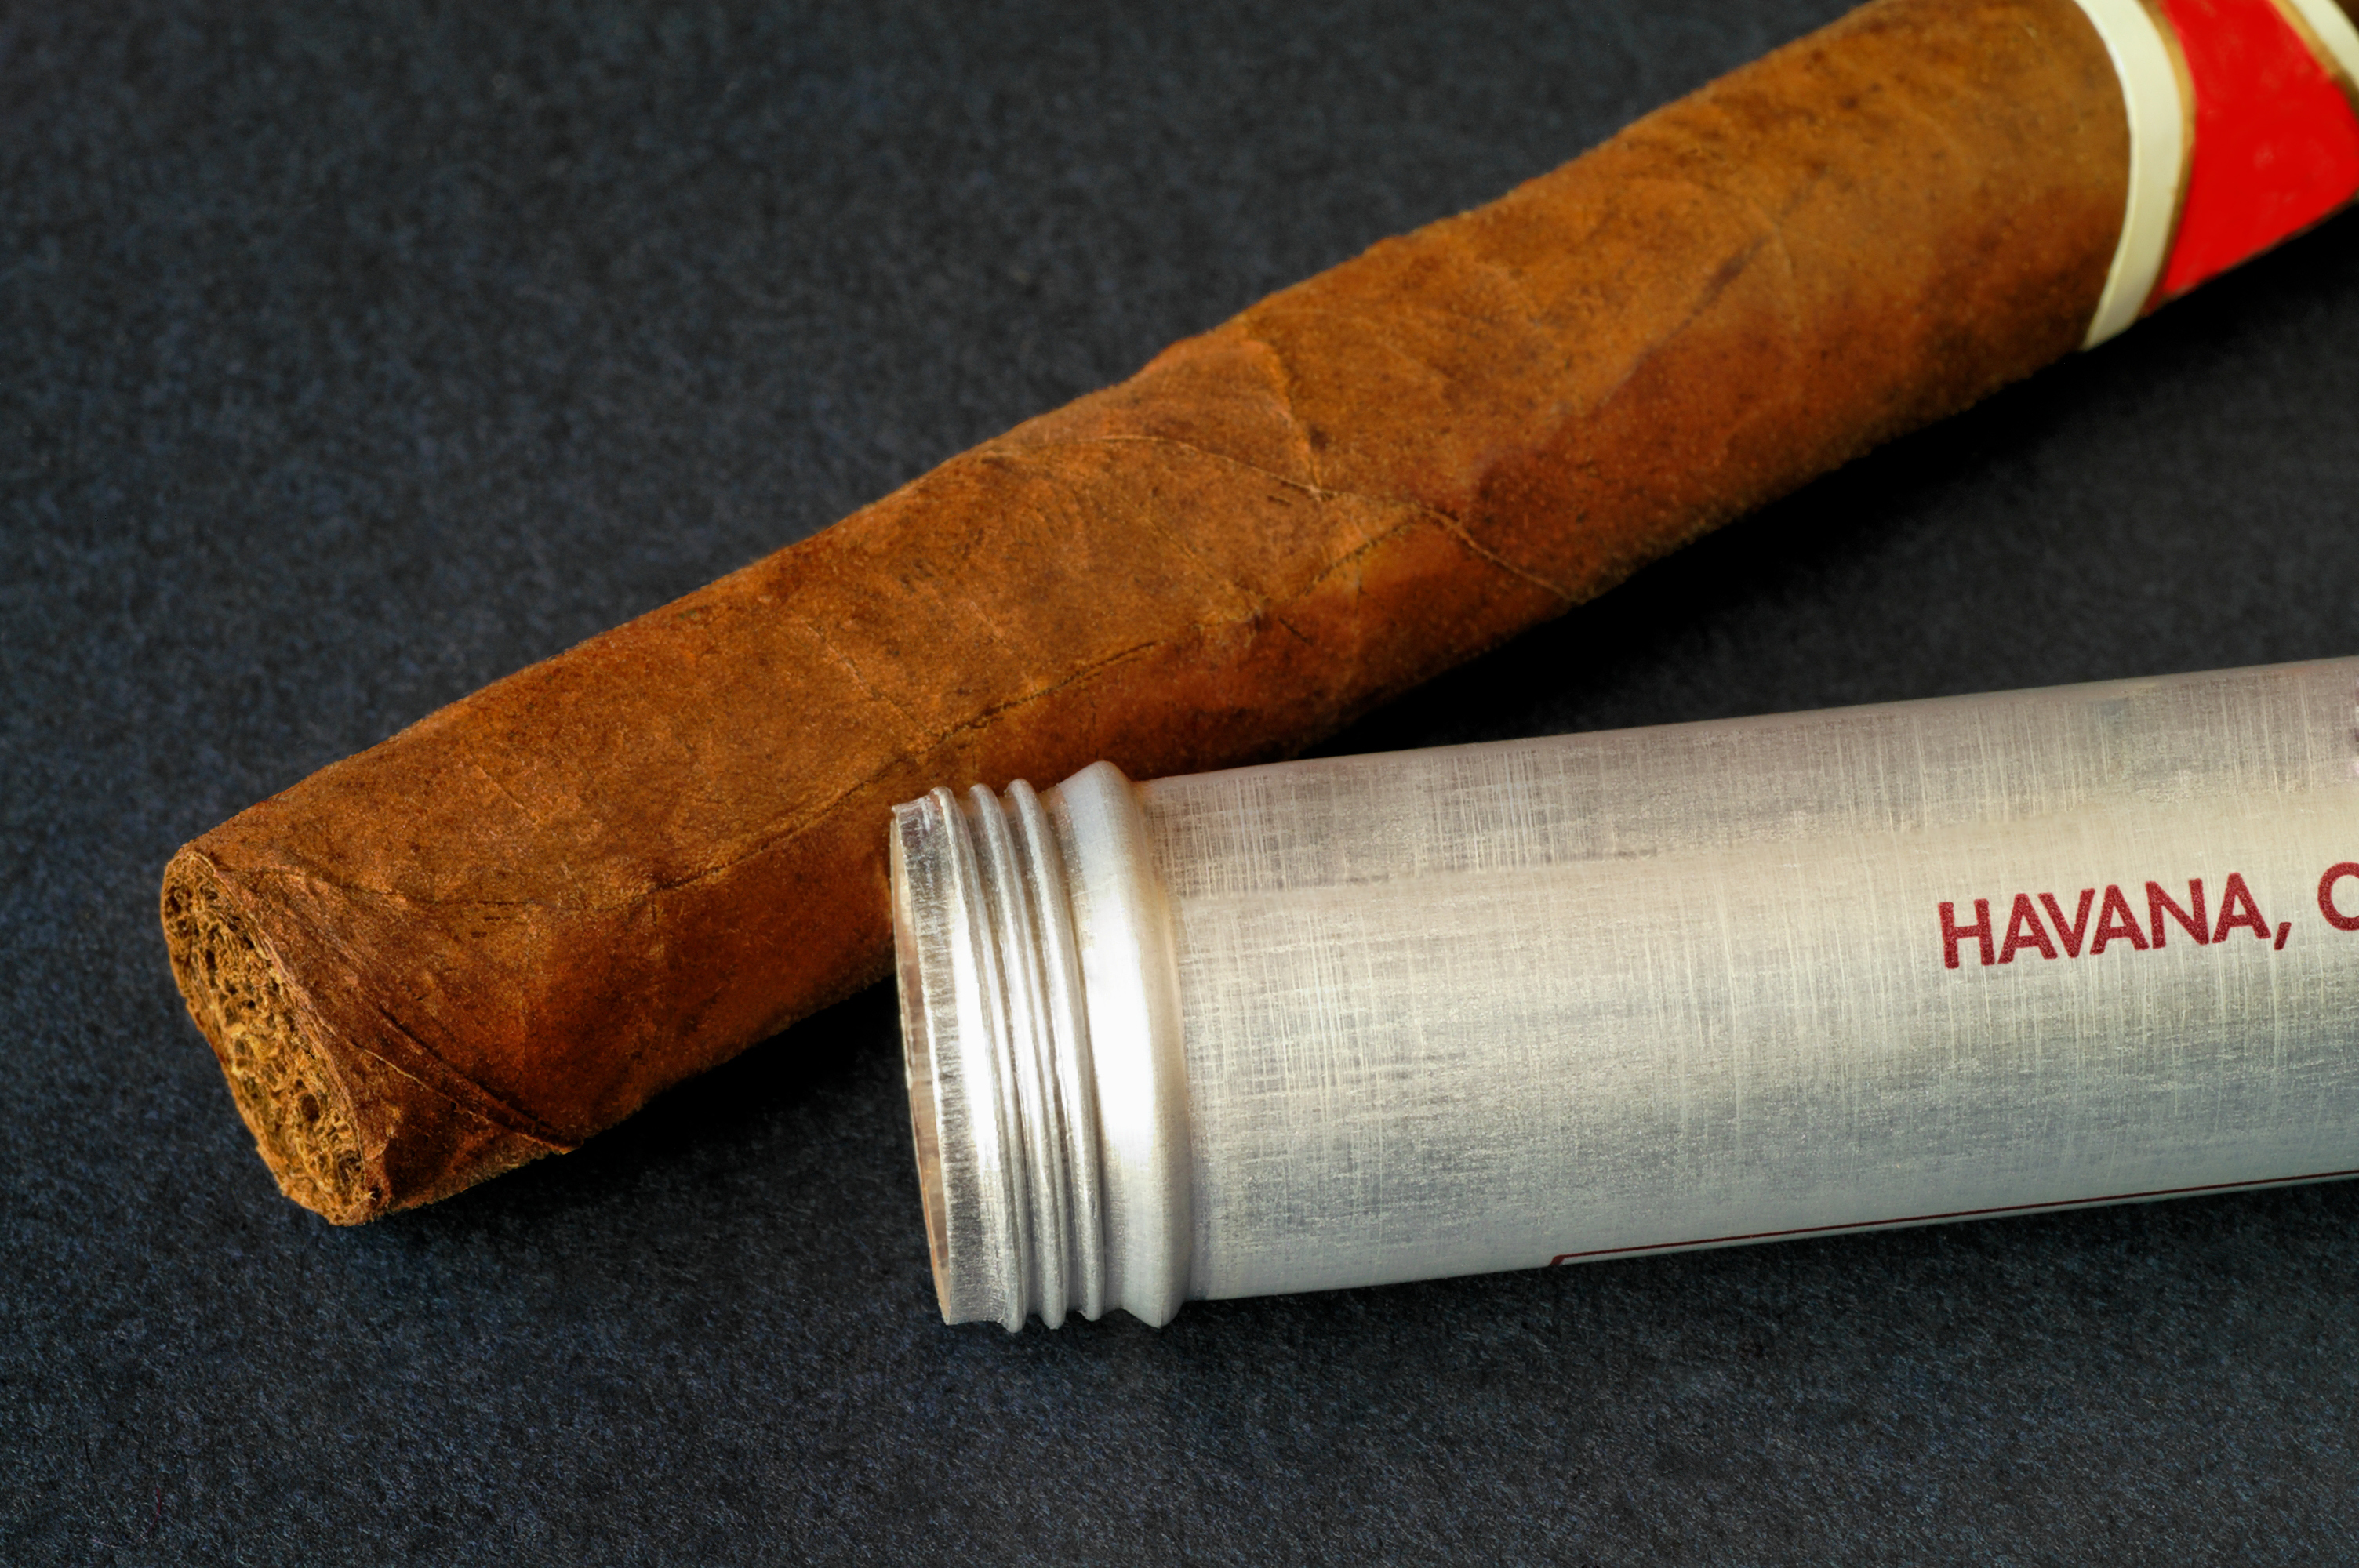 Oldest Cuban Cigar Brands